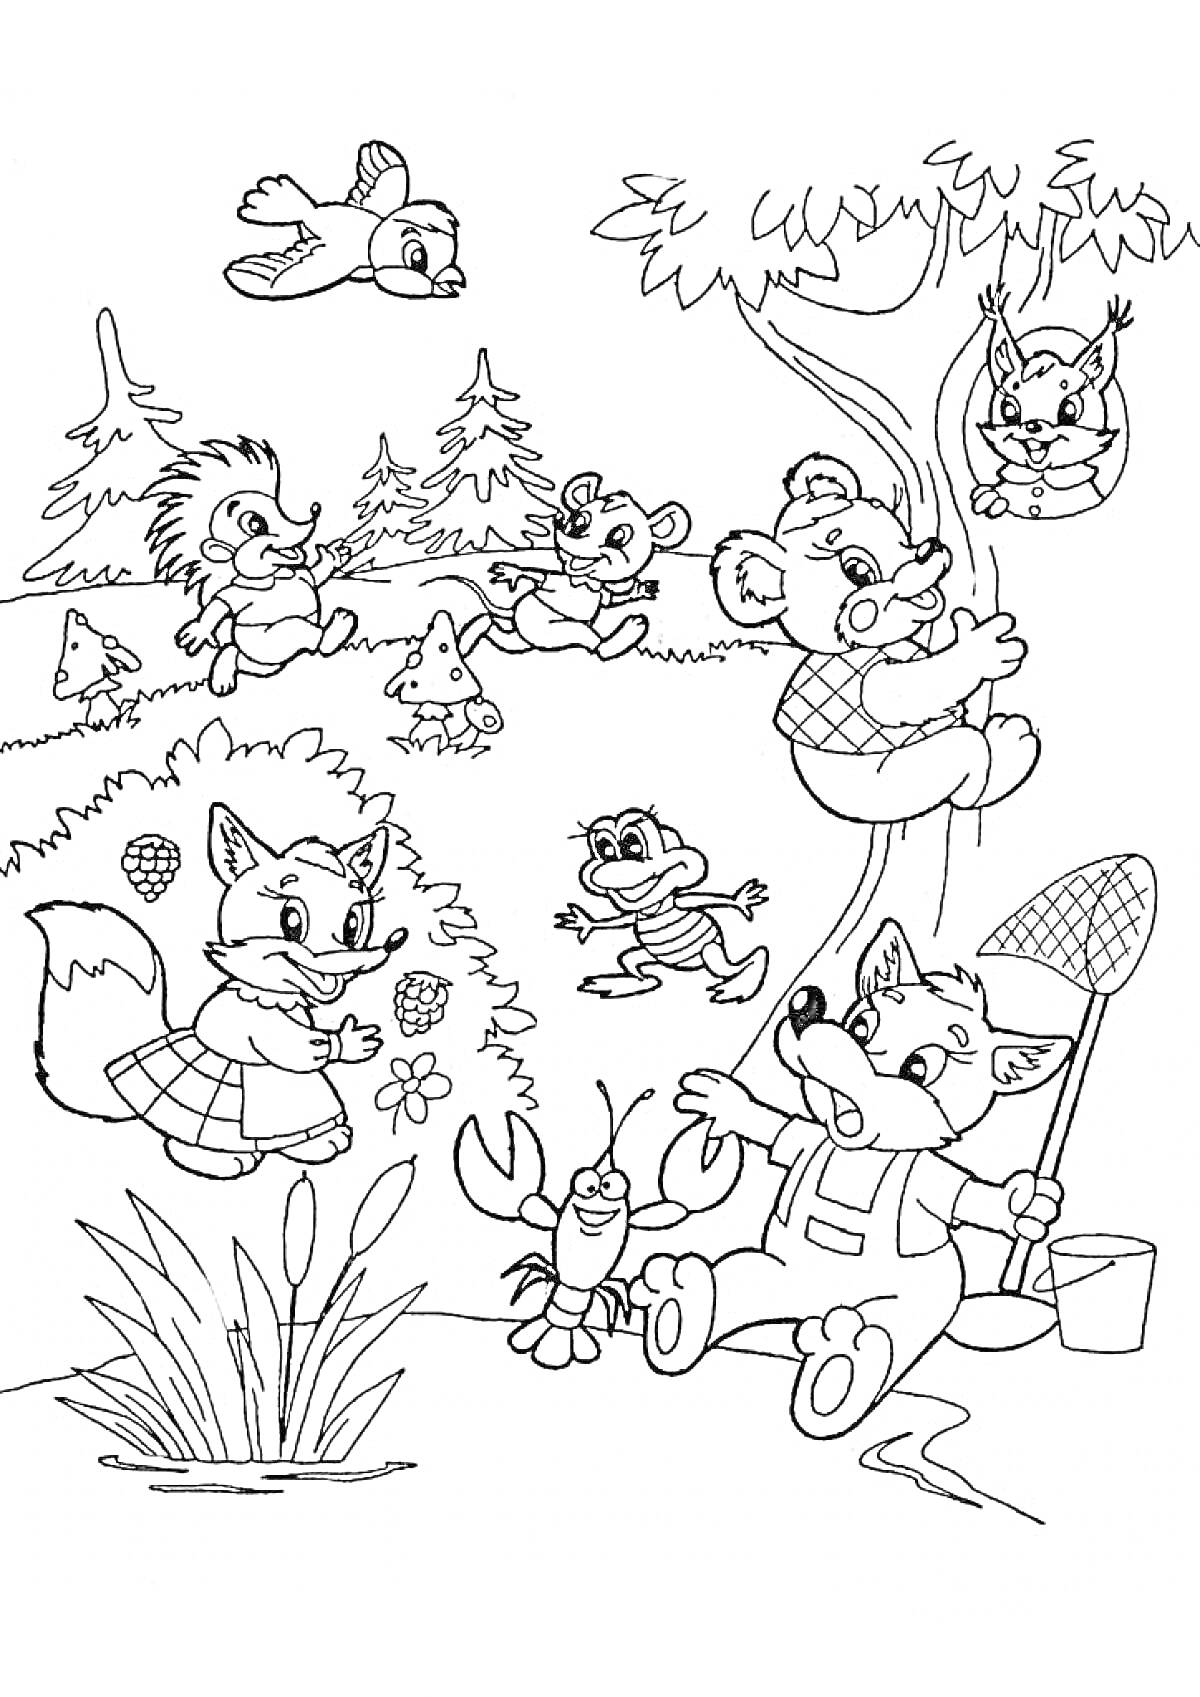 Раскраска Лесные животные - лиса с ведром и сачком, медведь на дереве, лиса с клубникой, ёжик, заяц, лягушка, птичка, белка на качелях, краб, лесные растения.